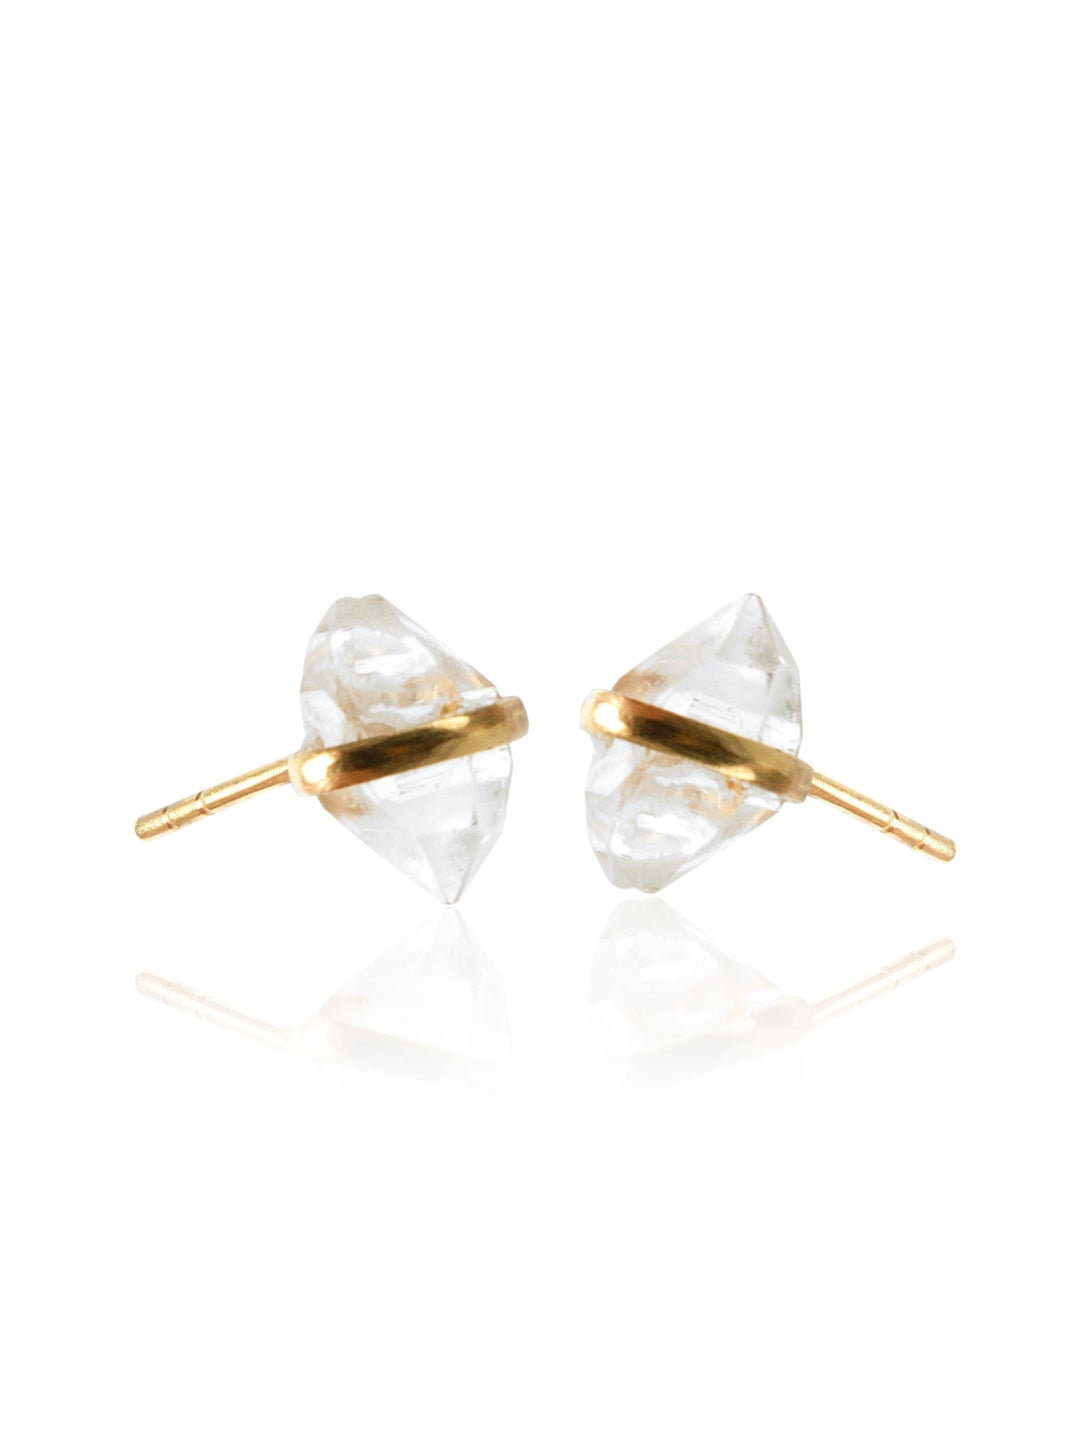 Herkimer Diamond Gold Stud Earrings